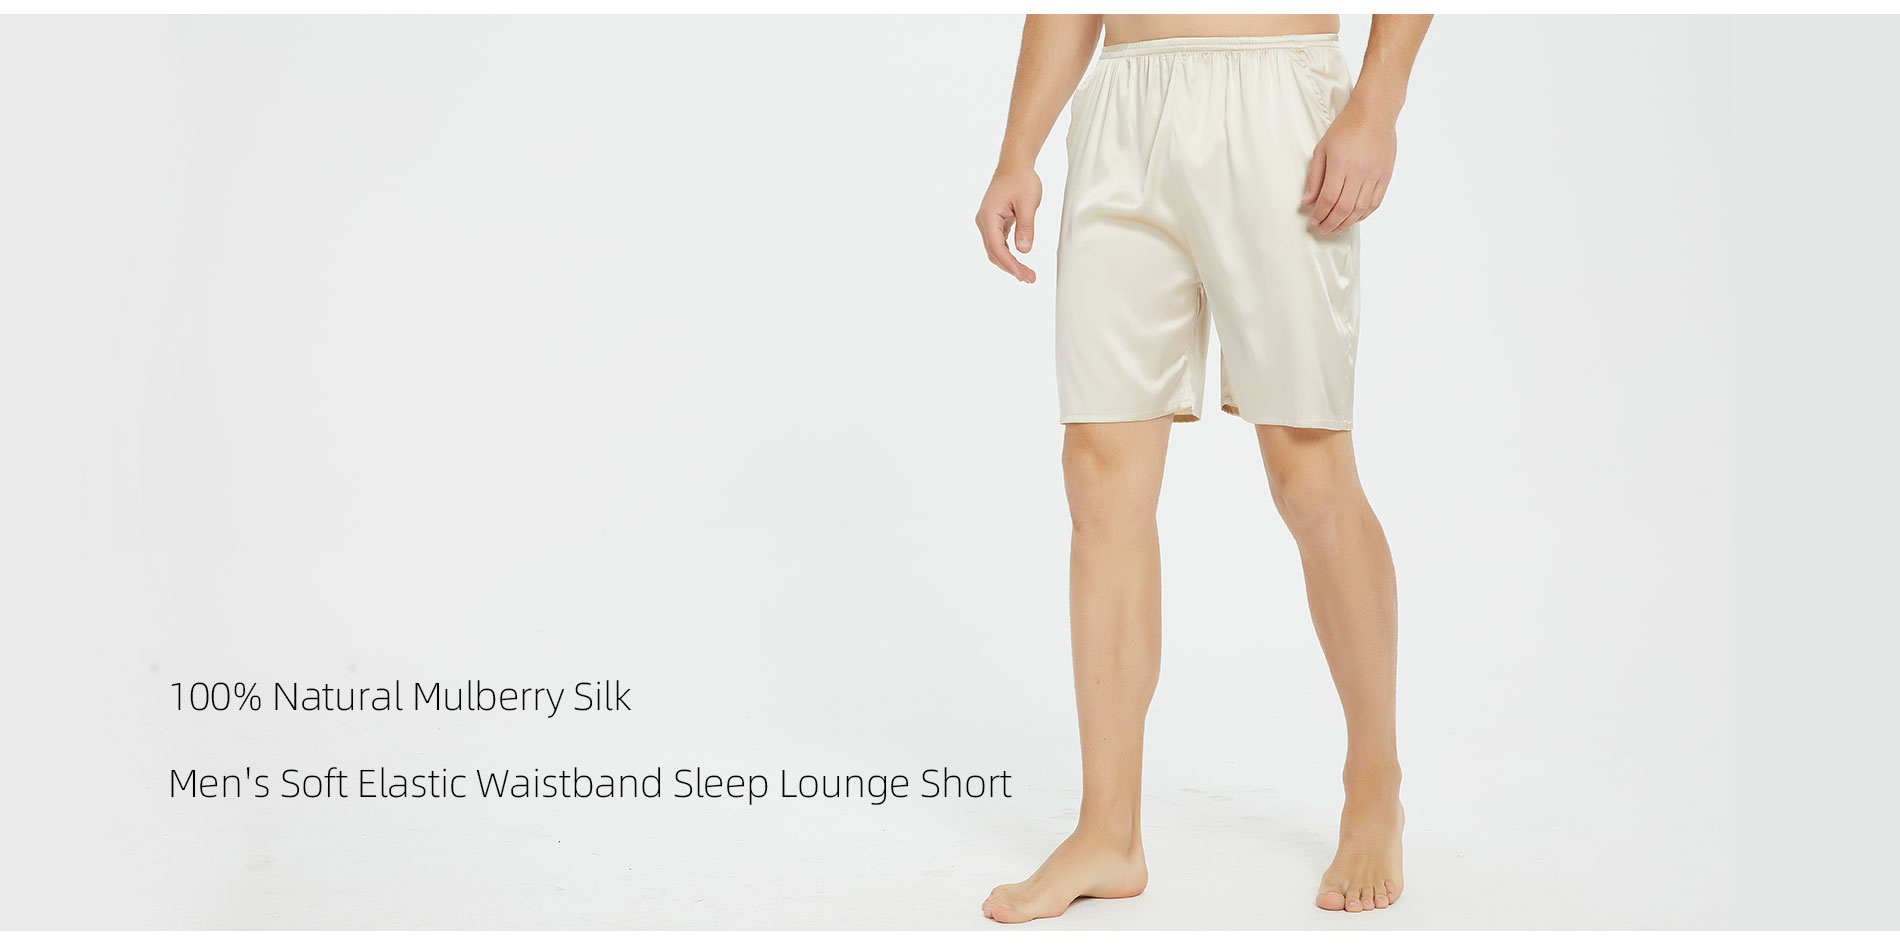 100% Natural Mulberry Silk Men's Soft Elastic Waistband Sleep Lounge Short